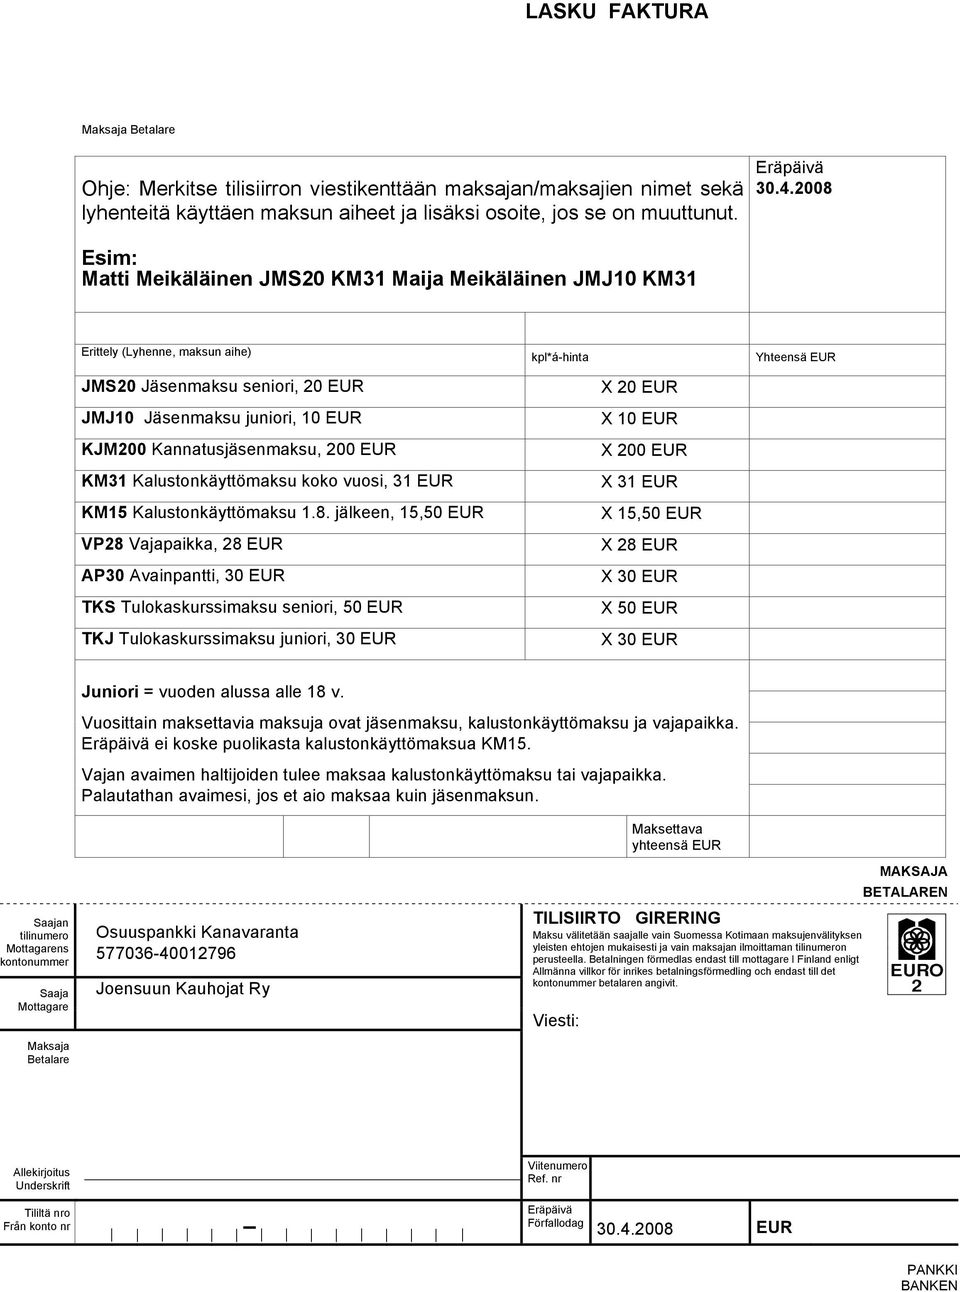 Kannatusjäsenmaksu, 200 EUR KM31 Kalustonkäyttömaksu koko vuosi, 31 EUR KM15 Kalustonkäyttömaksu 1.8.